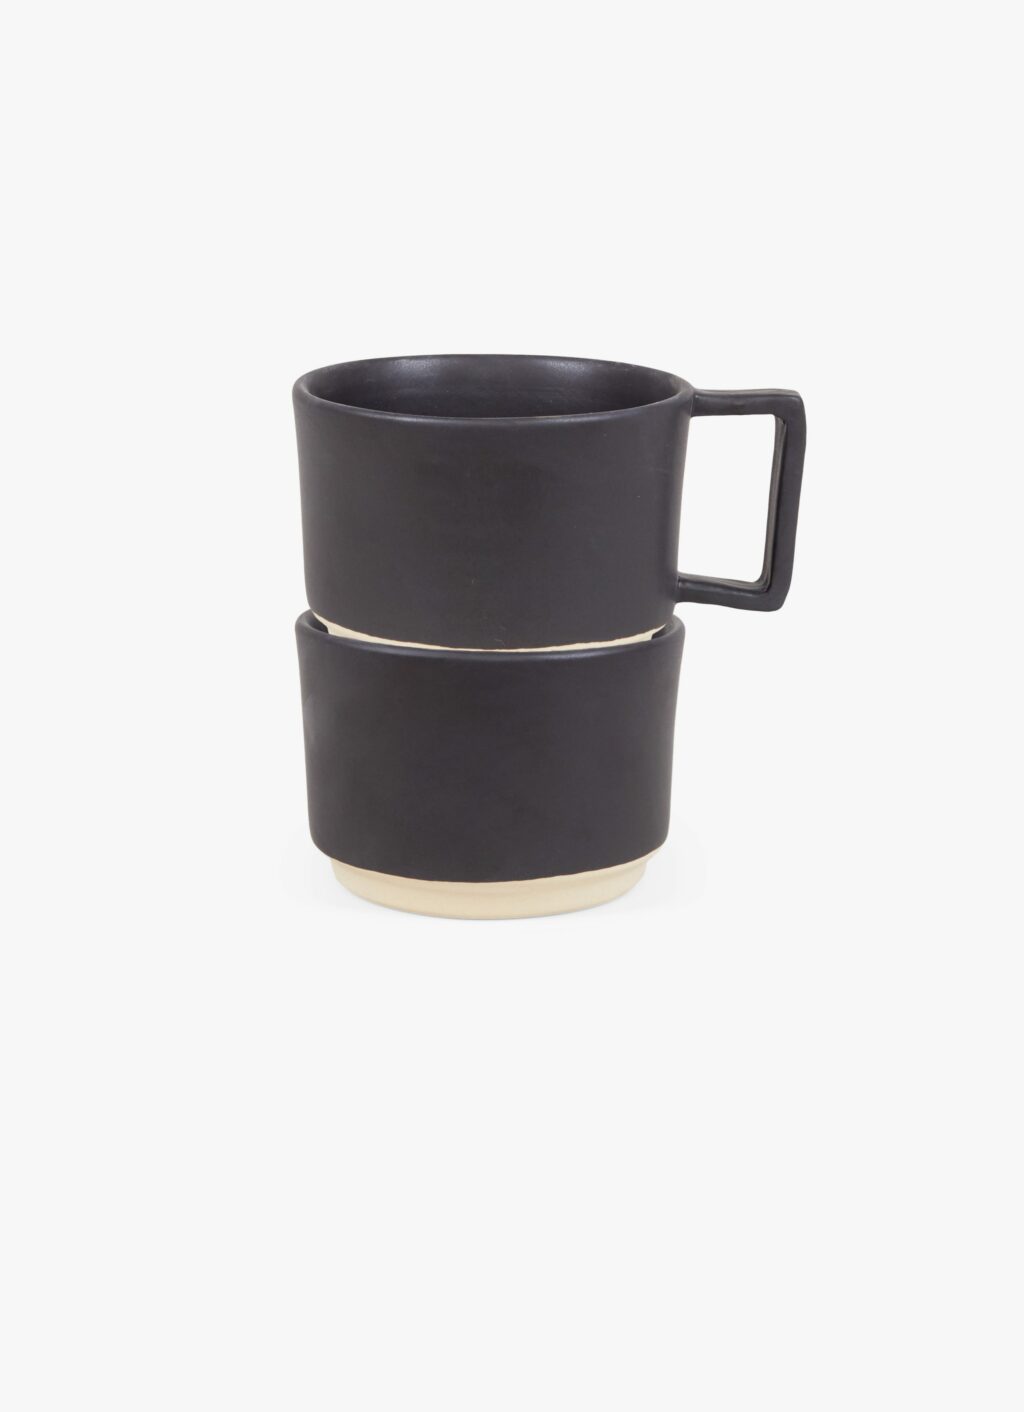 Frama - Otto - Low Mug with Handle - Black